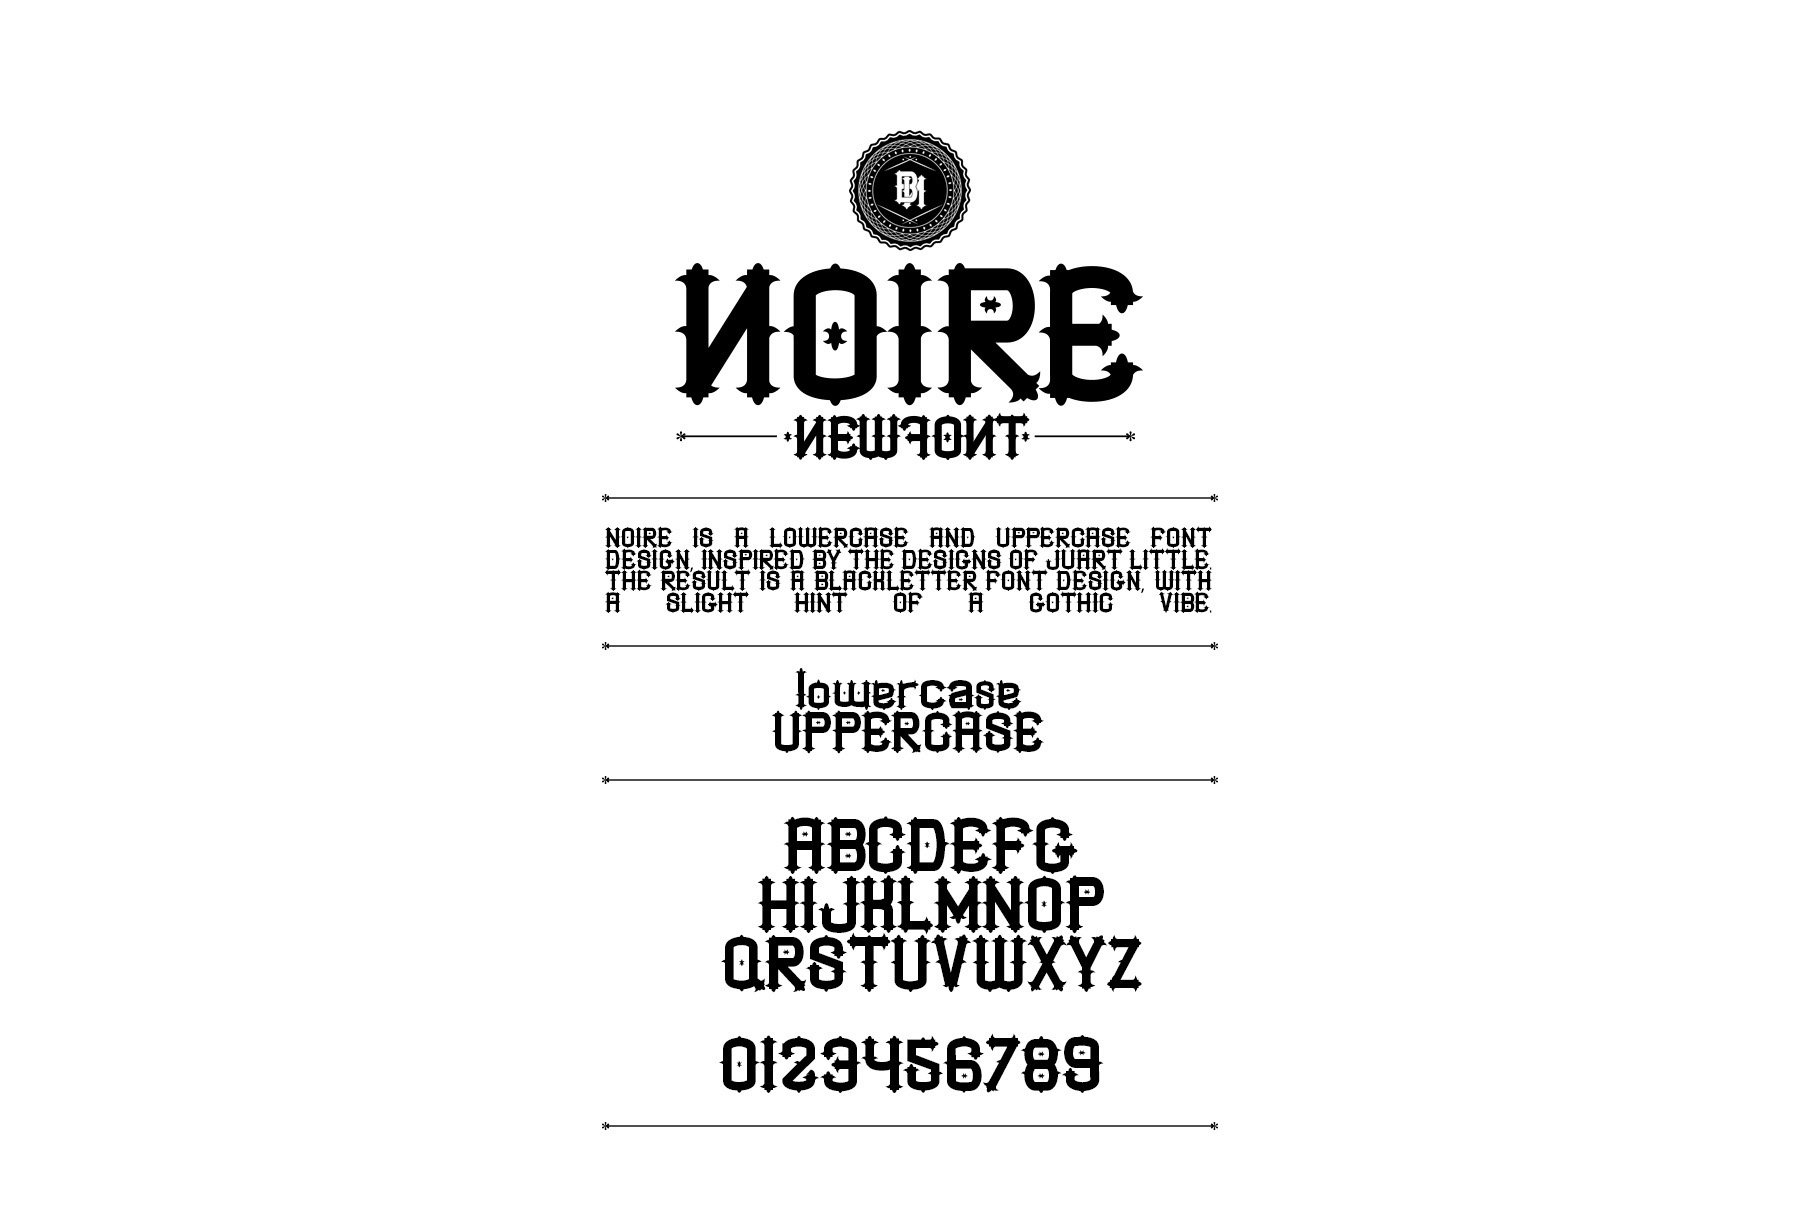 NOIRE font cover image.